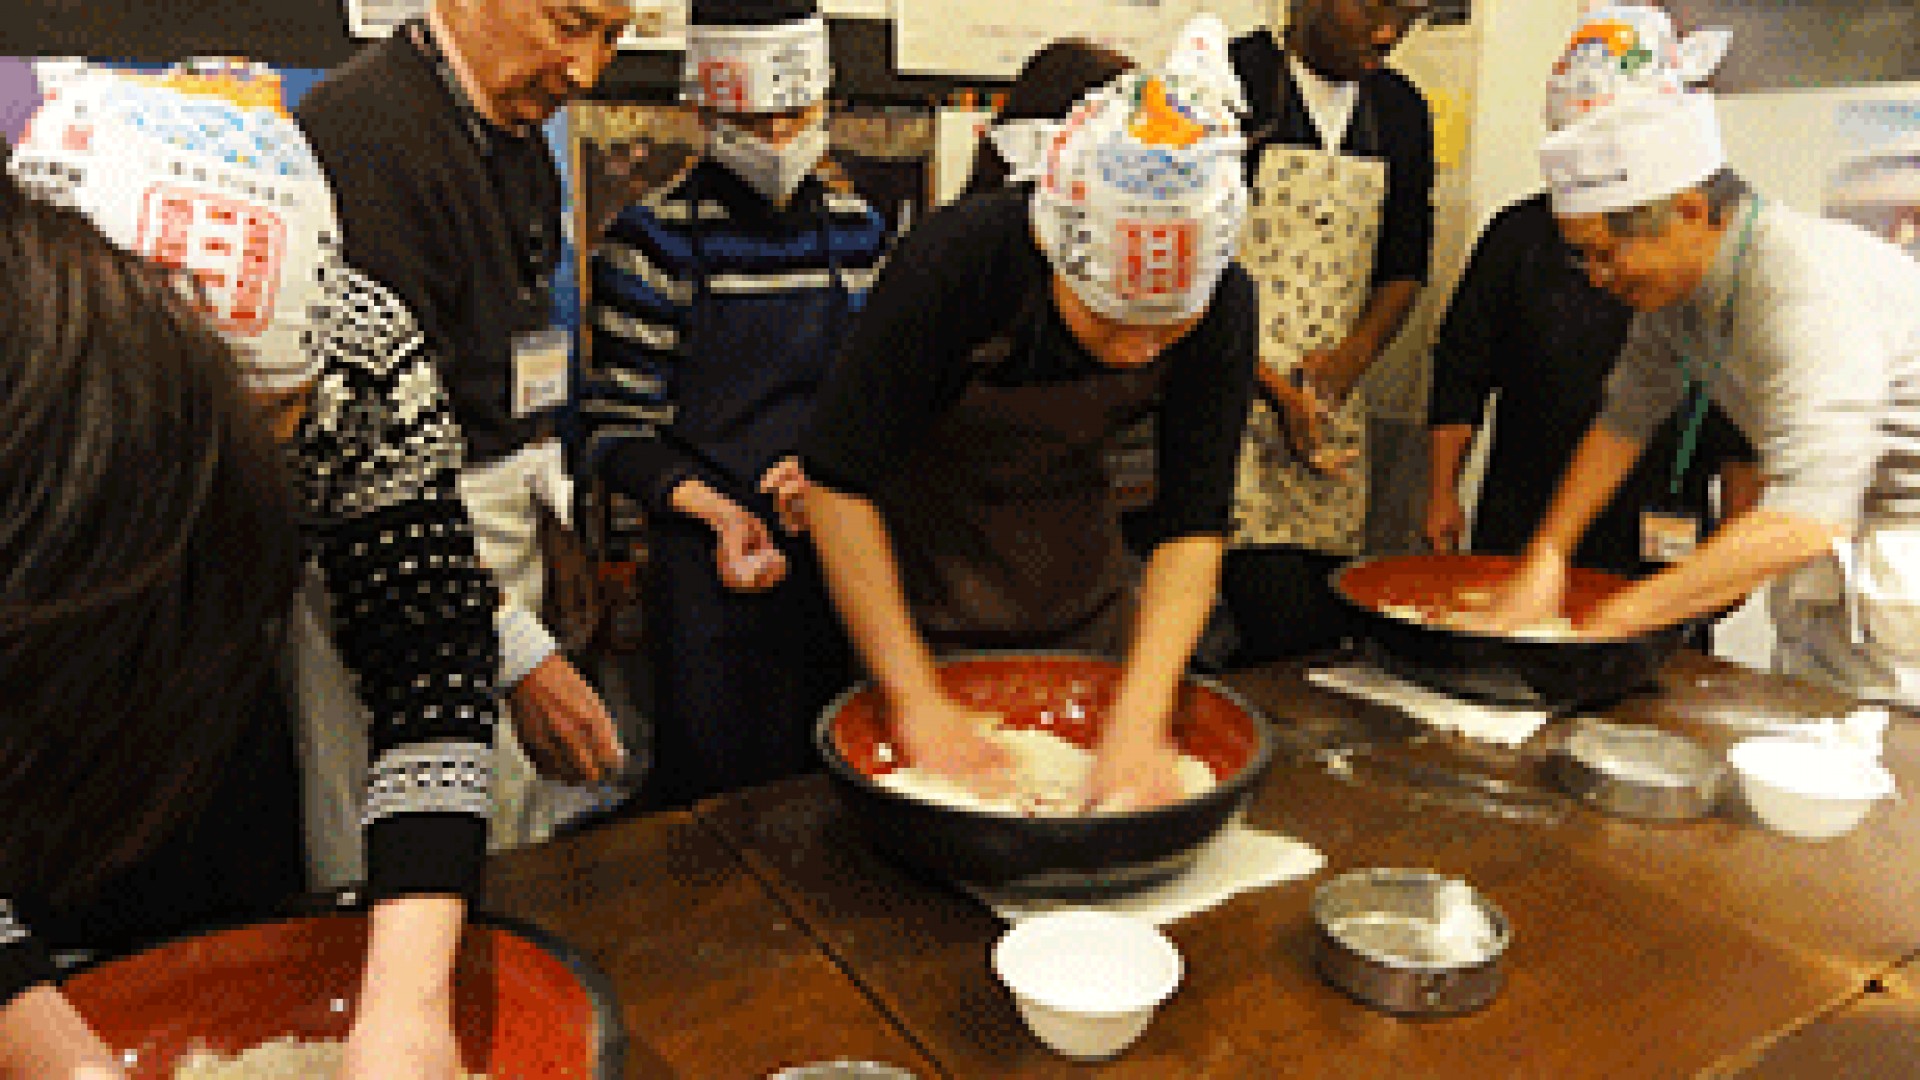 Matsumotokan (clase de cocina de fideos de soba)